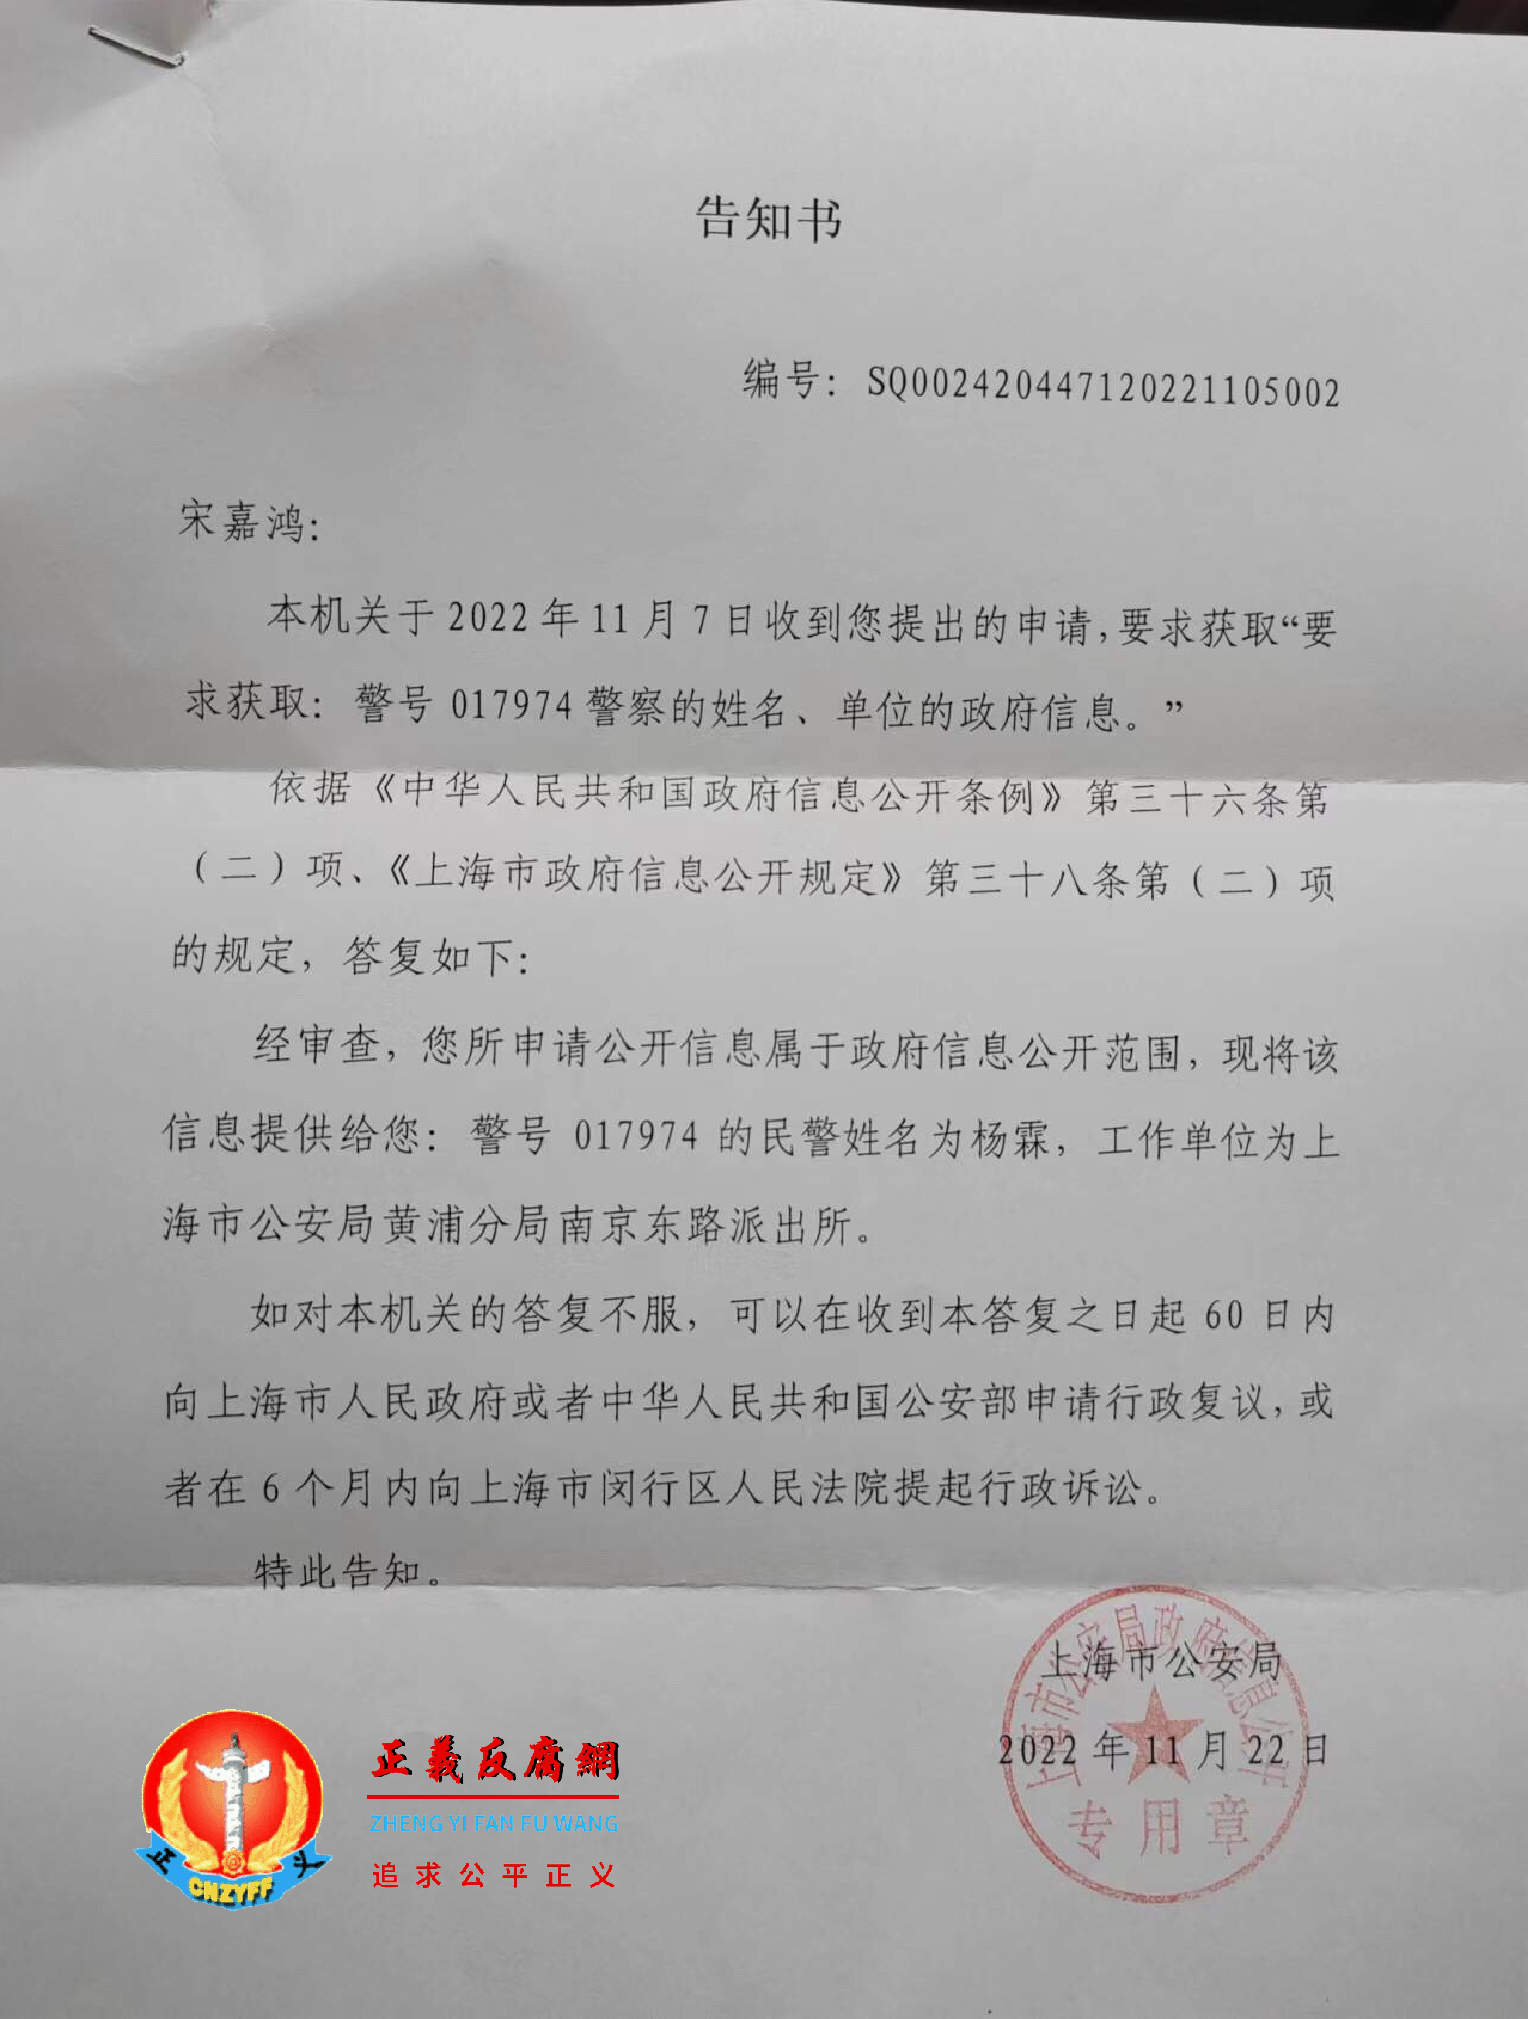 上海市公安局政府信息公开《告知书》编号SQ002420447120221105002。揭露冒名警察真实身份。.png